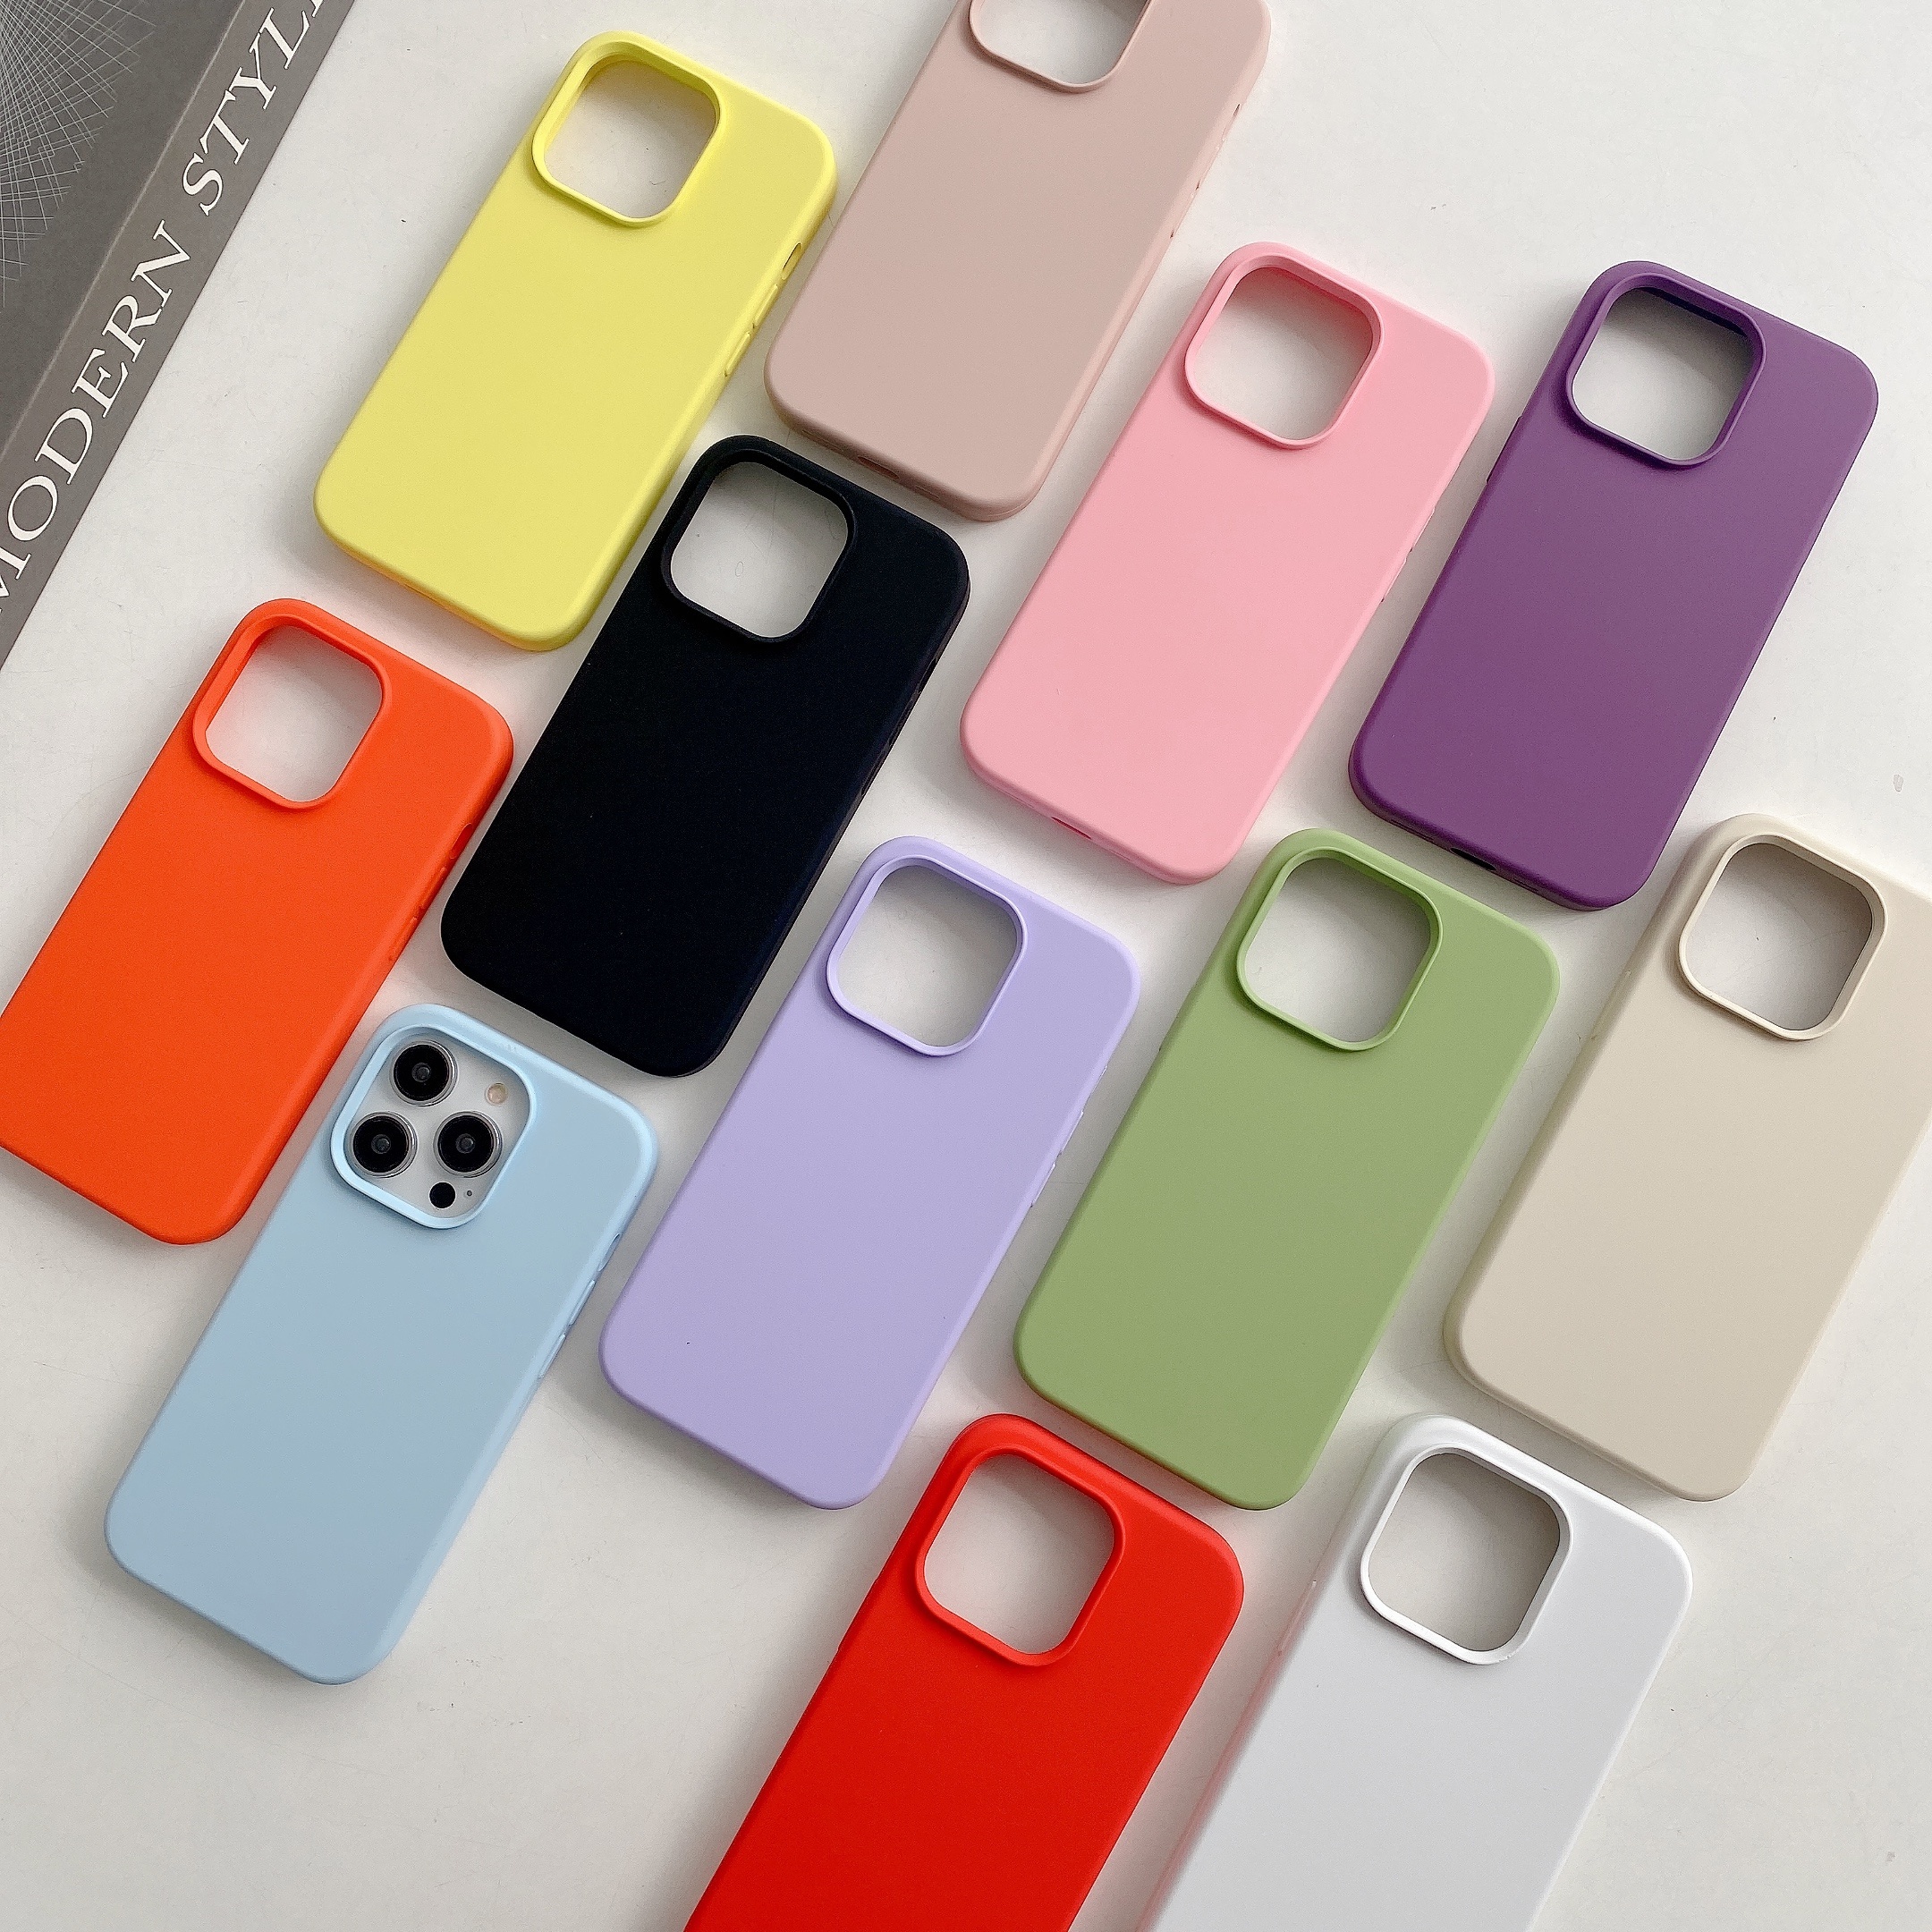 Funda para iPhone XR para niñas, bonita funda protectora de silicona suave  con patrón de corazón para iPhone XR de 6.1 pulgadas, color morado